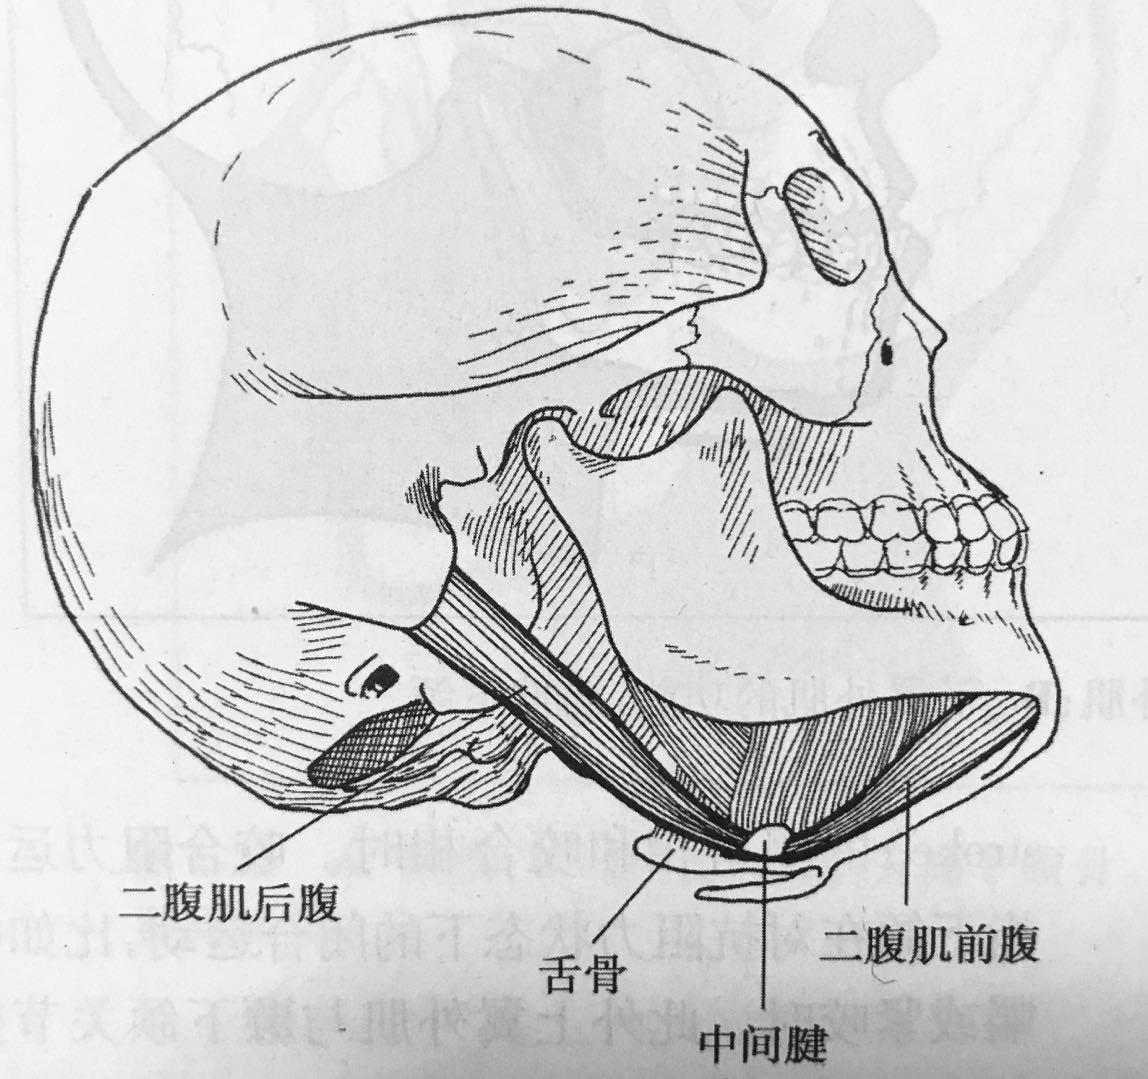 下巴截骨手術:調整下巴後縮、月亮下巴|璞美整形外科